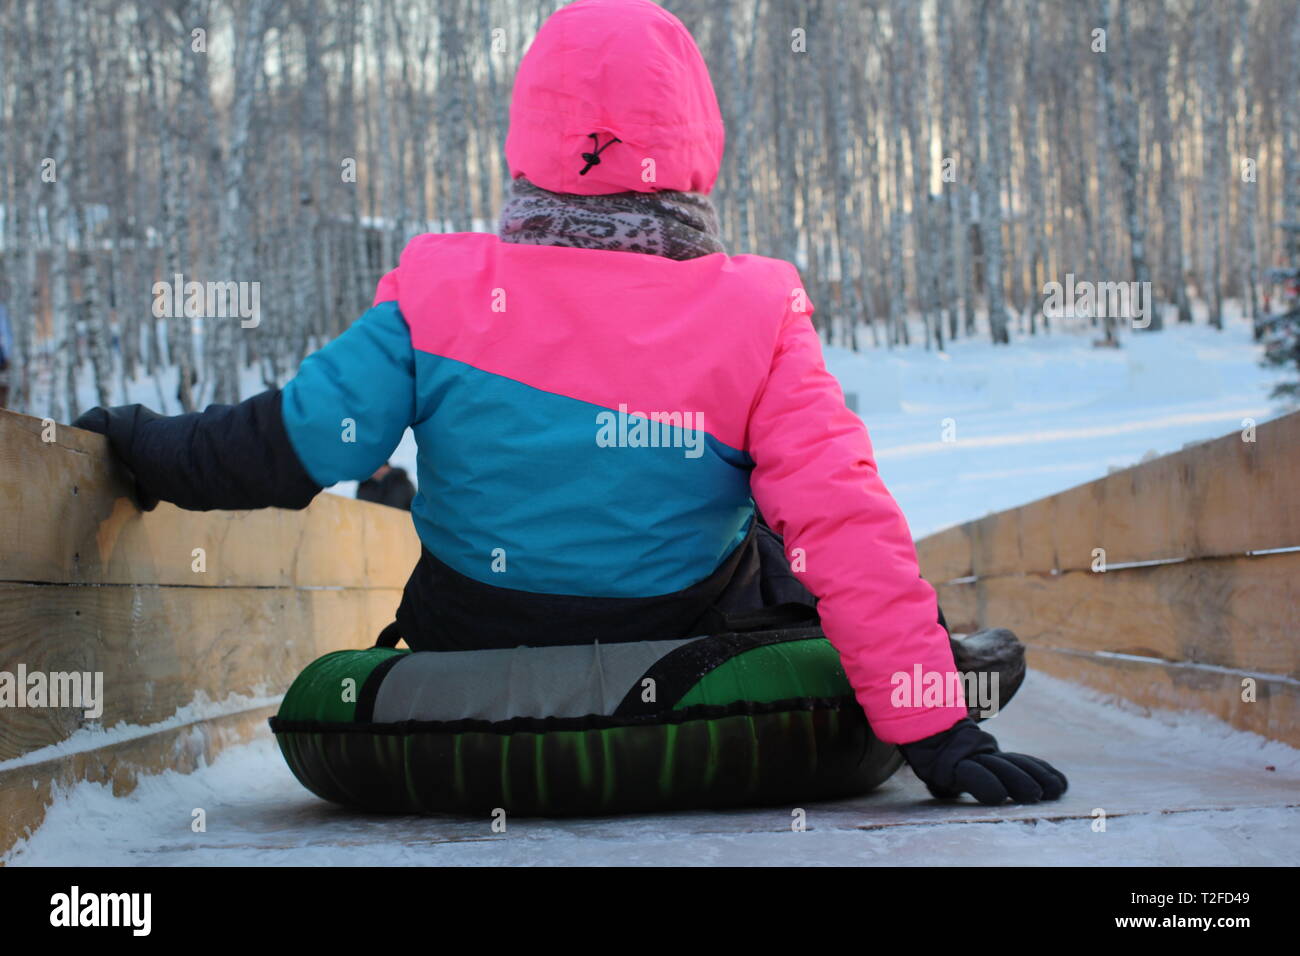 La ragazza preparati a rotolare giù per la diapositiva di ghiaccio in inverno su una slitta gonfiabile Foto Stock